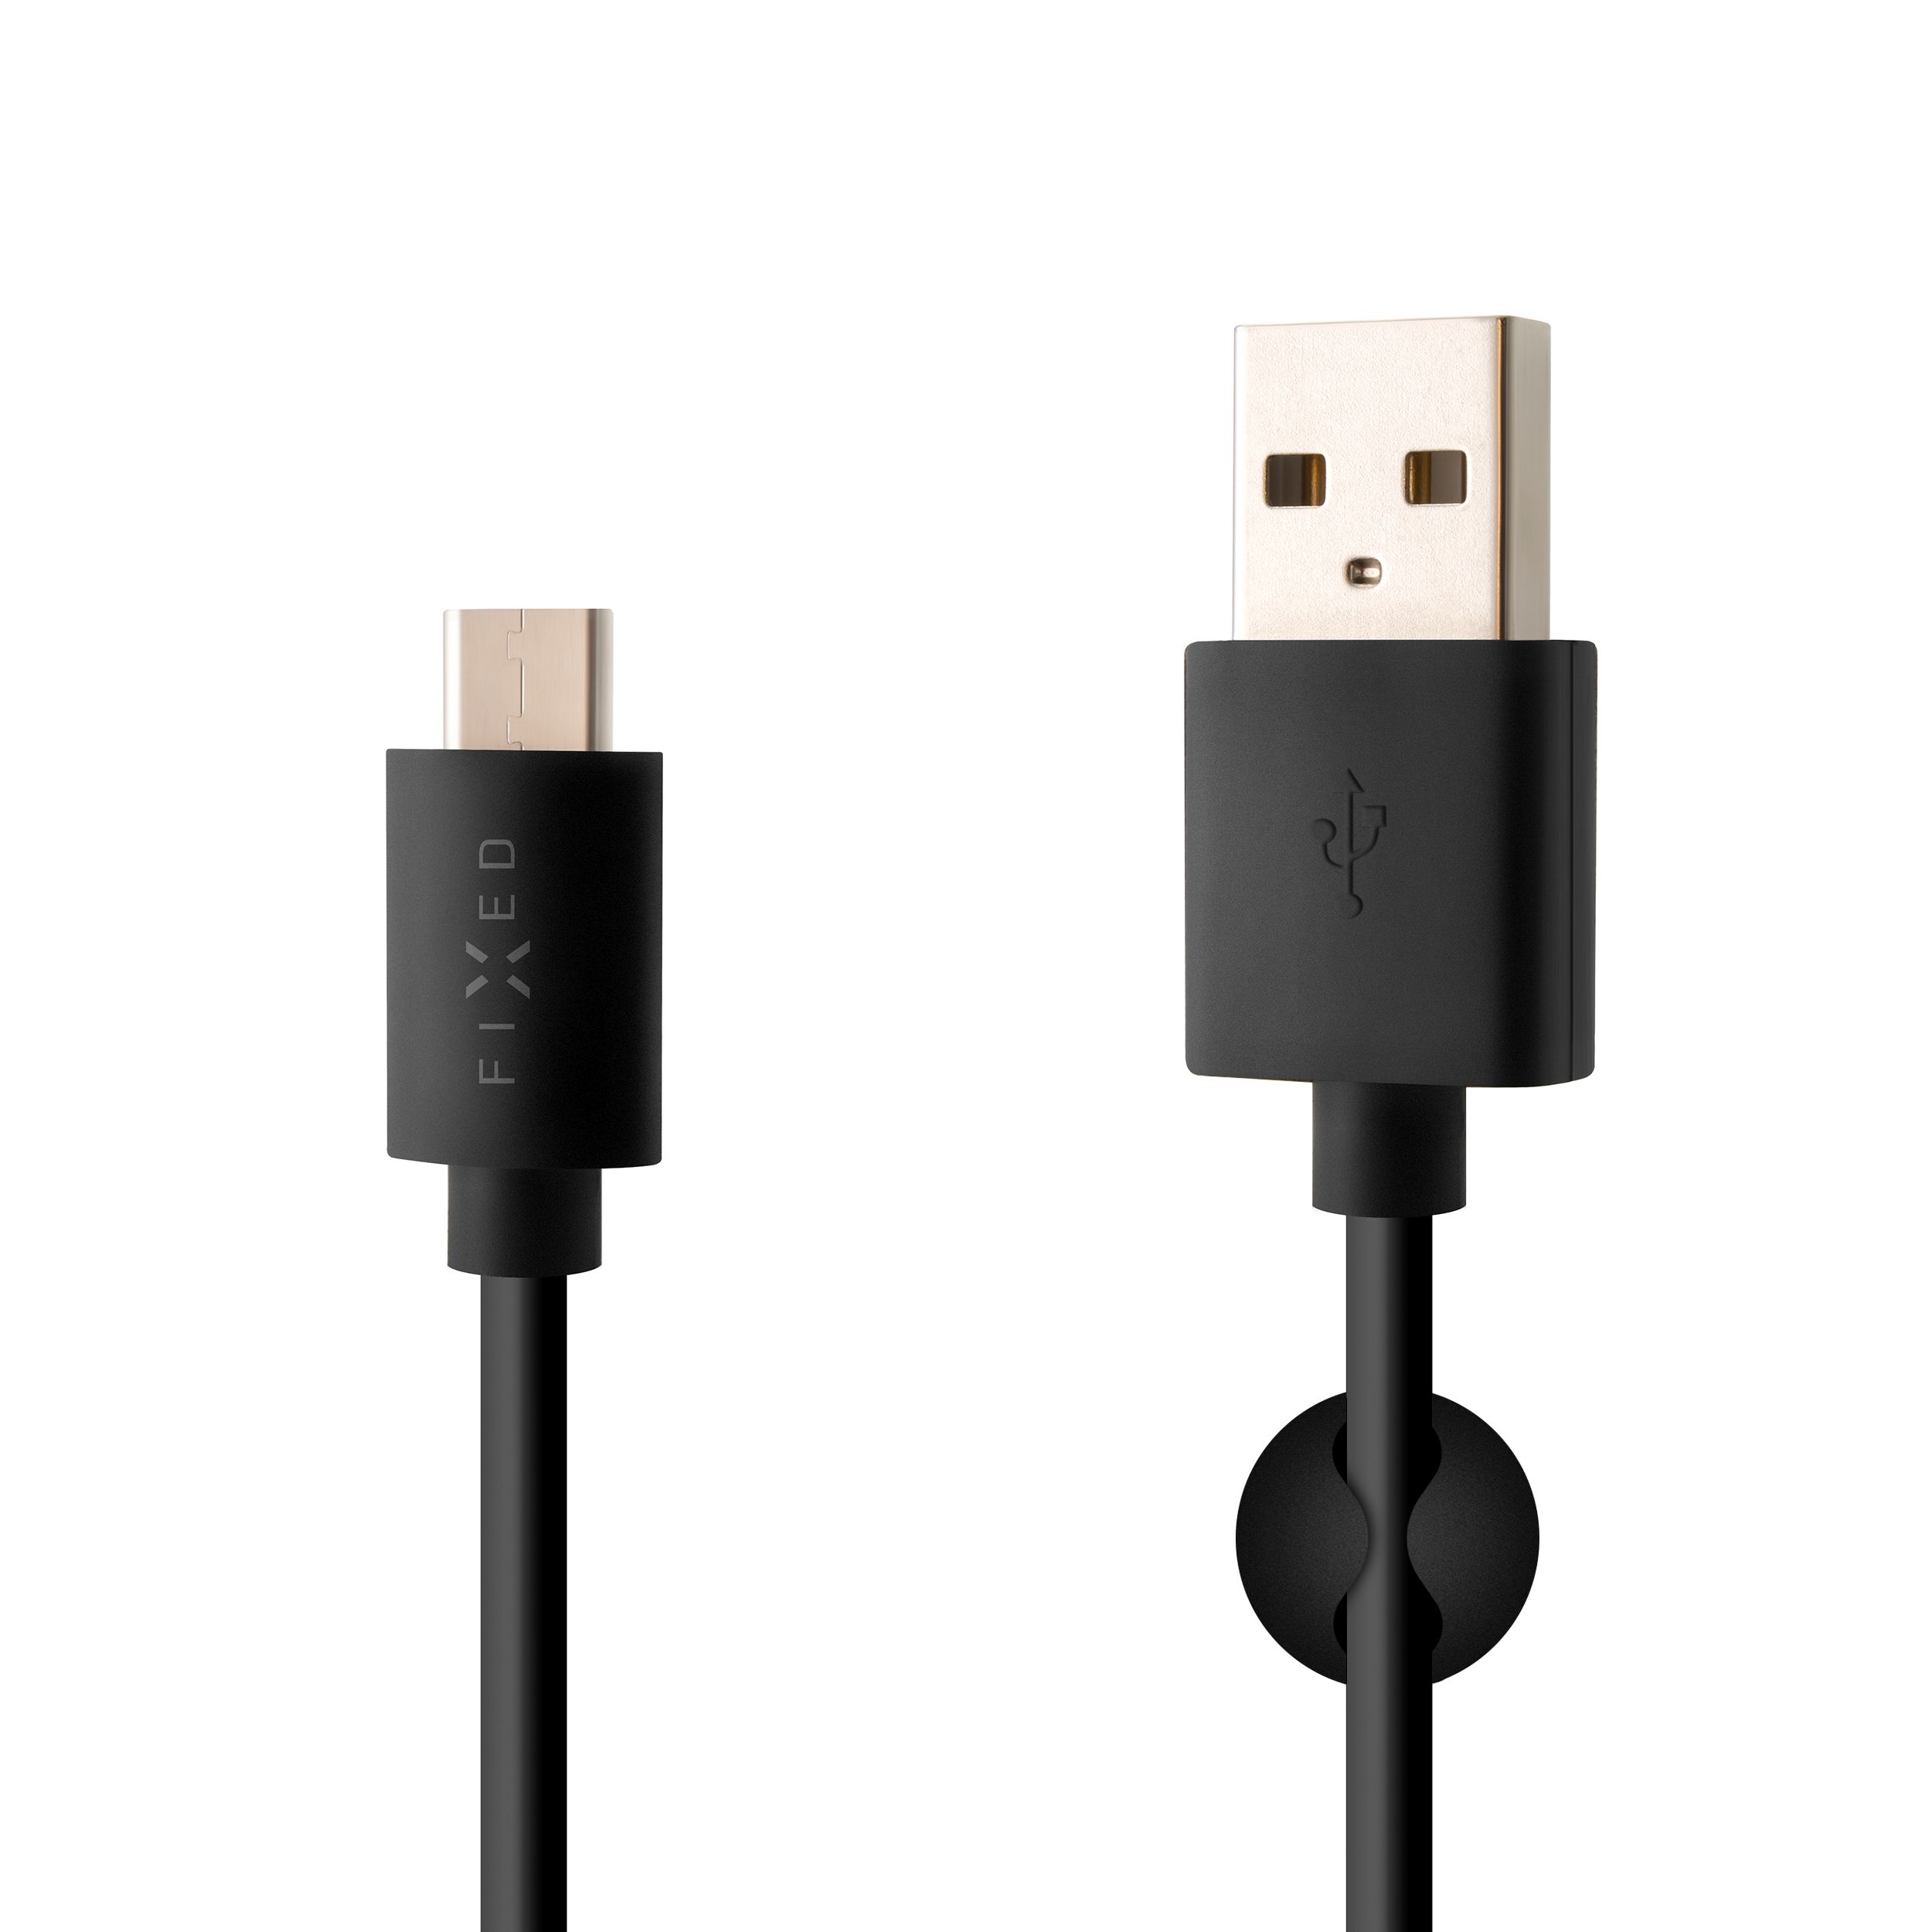 Dlouhý datový a nabíjecí kabel s konektory USB/USB-C, USB 2.0, 2 metry, černý